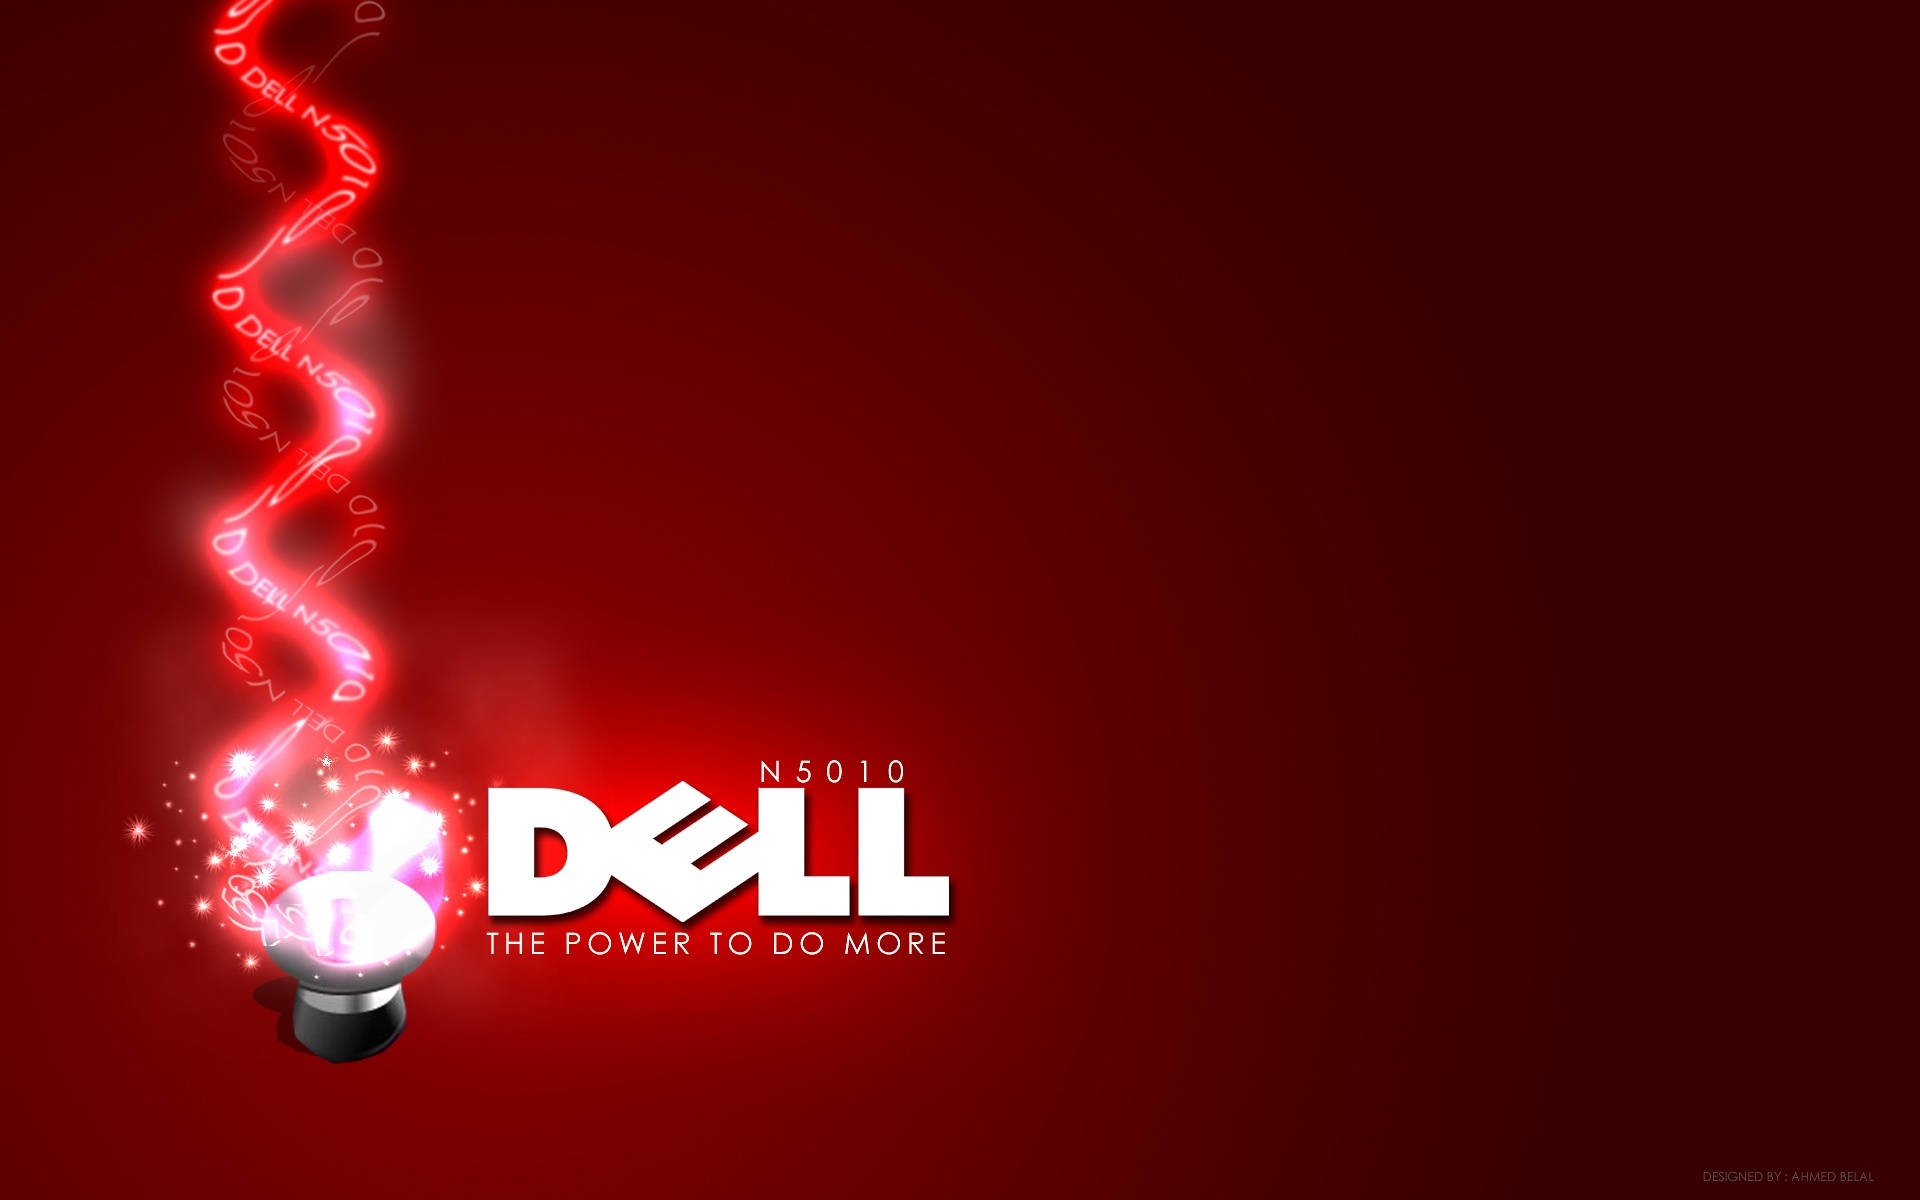 N5010 Dell Hd Logo Background